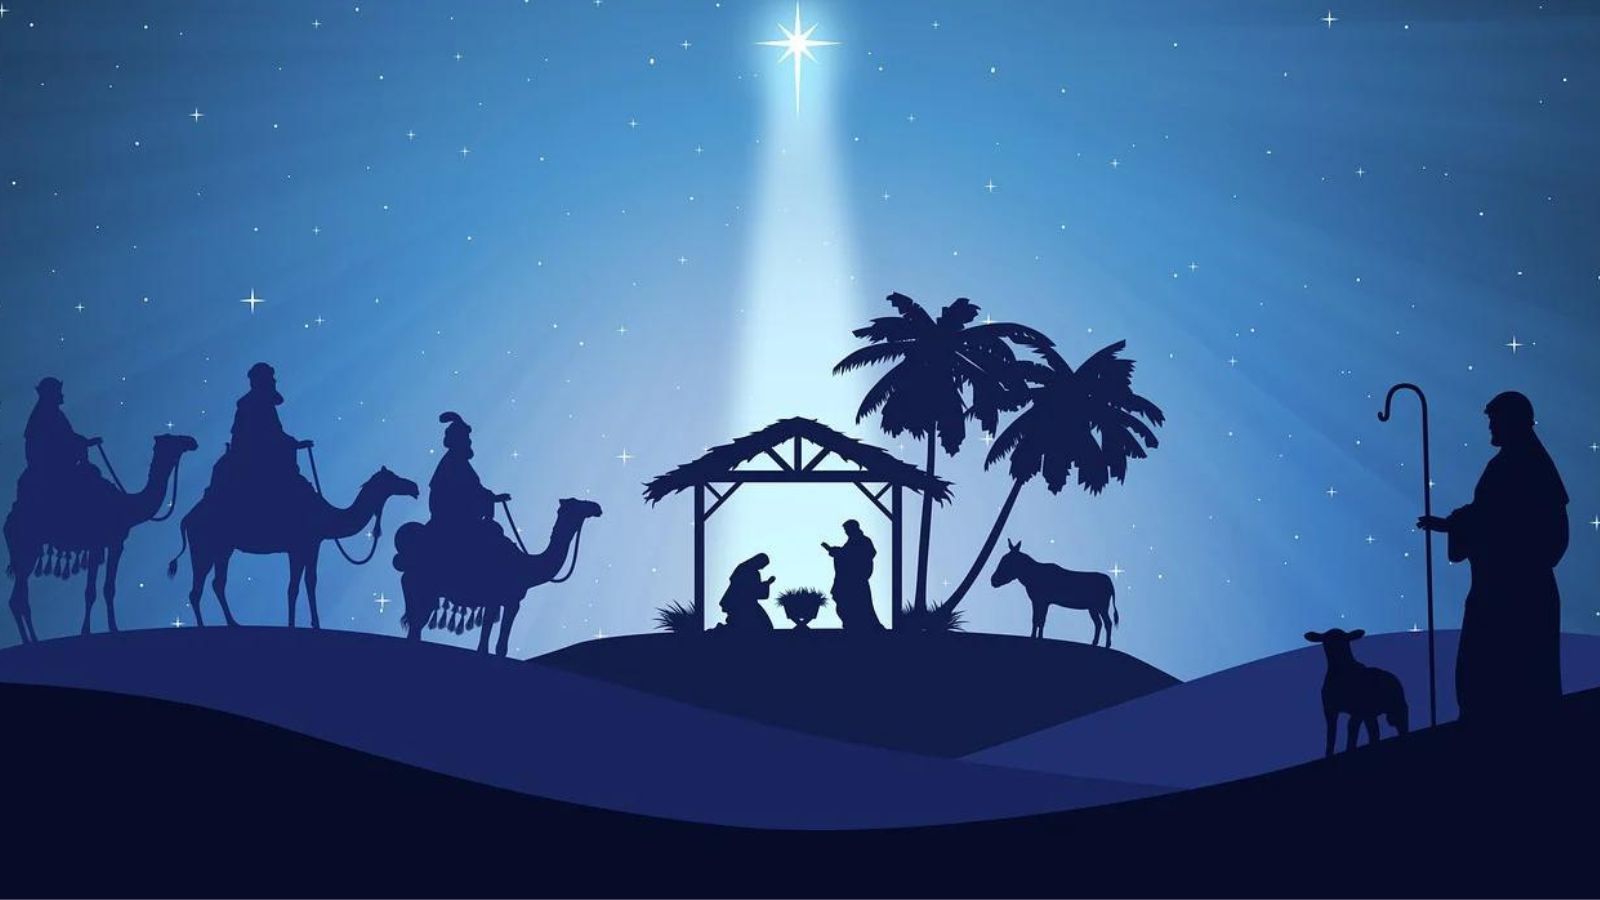 5 Salmos de Natal para entender seu significado e agradecer a Jesus